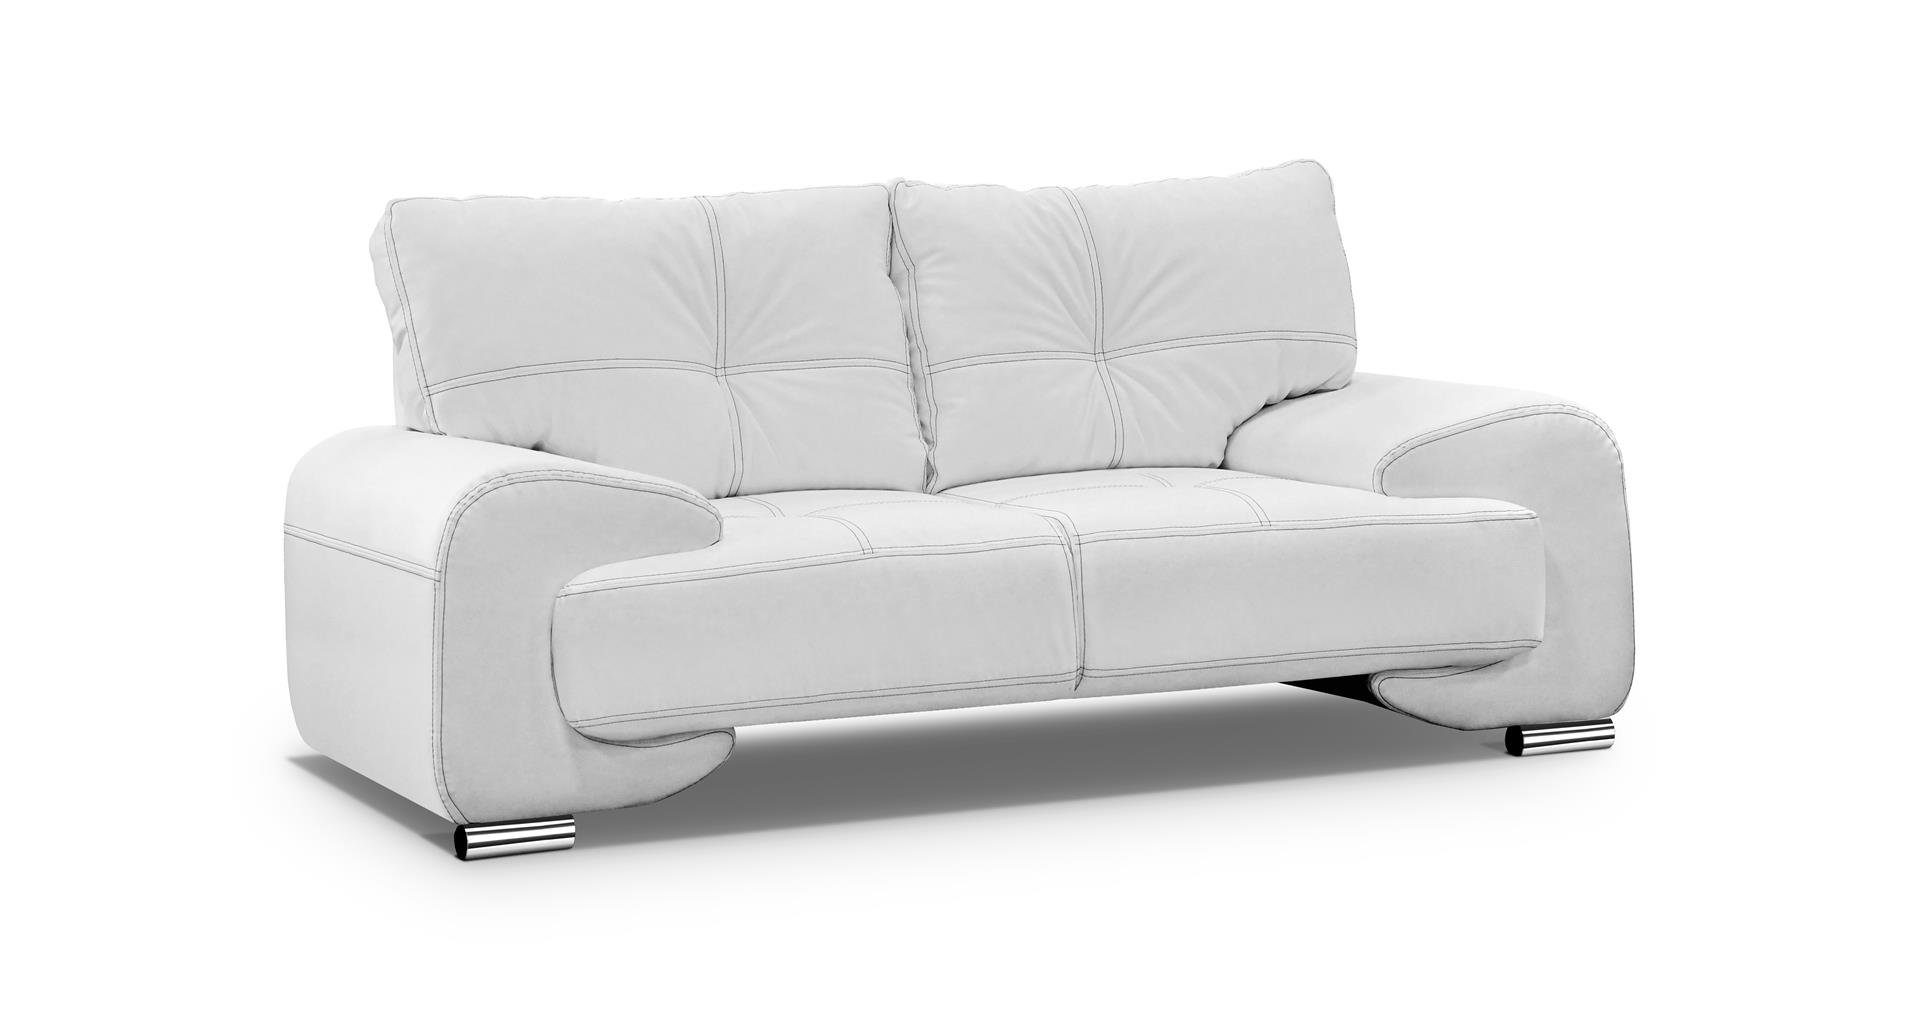 Beautysofa 2-Sitzer Zweisitzer Sofa Couch OMEGA Neu Weiß (dolaro 511)